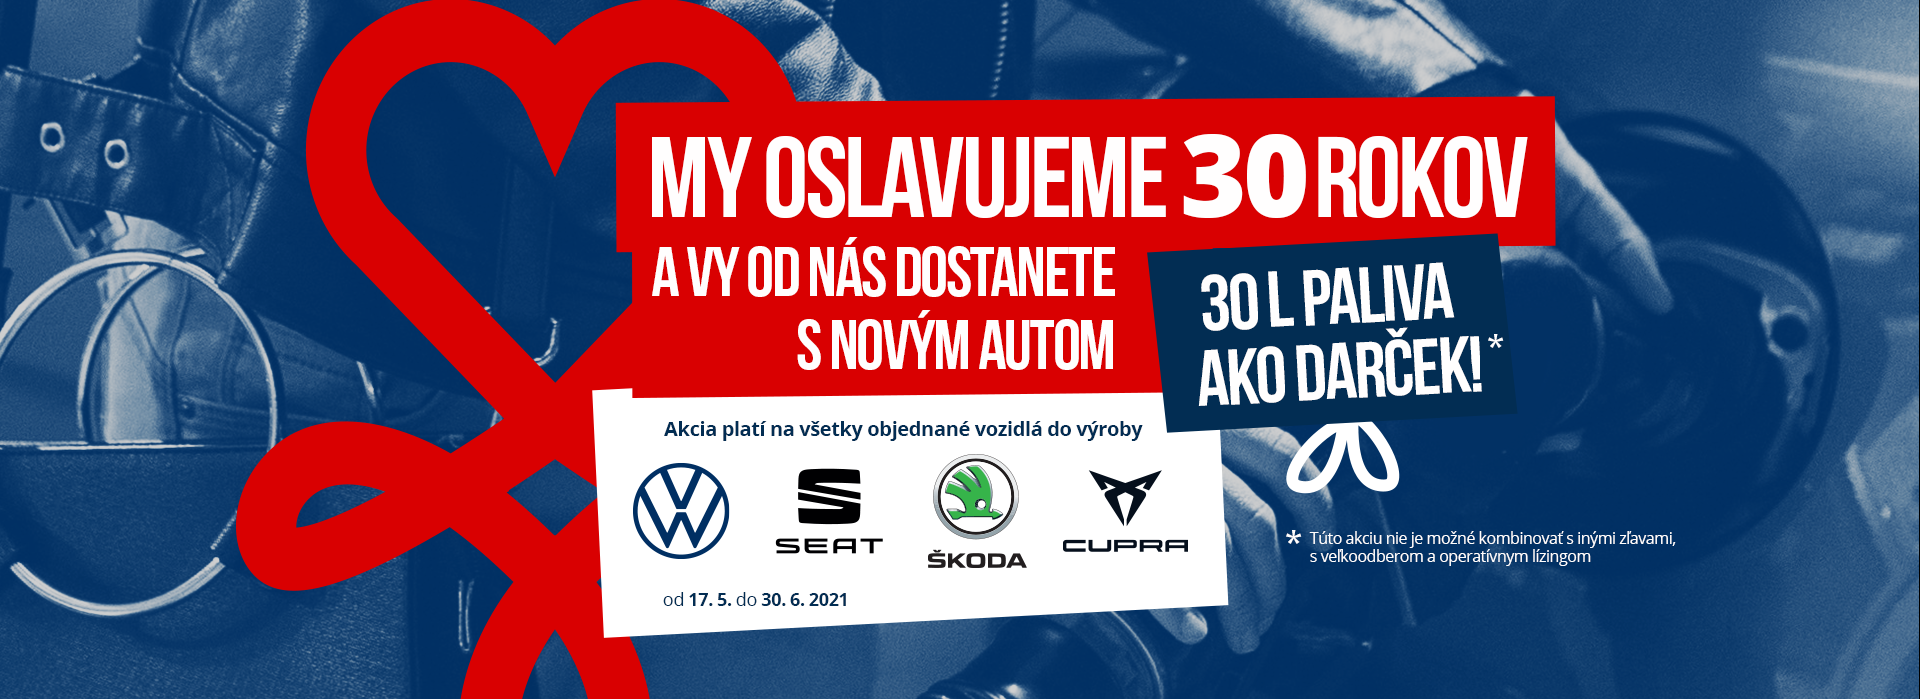 Autoprofit.sk My oslavujeme 30 rokov a Vy od nás dostanete s novým autom 30 l paliva ako darček! 